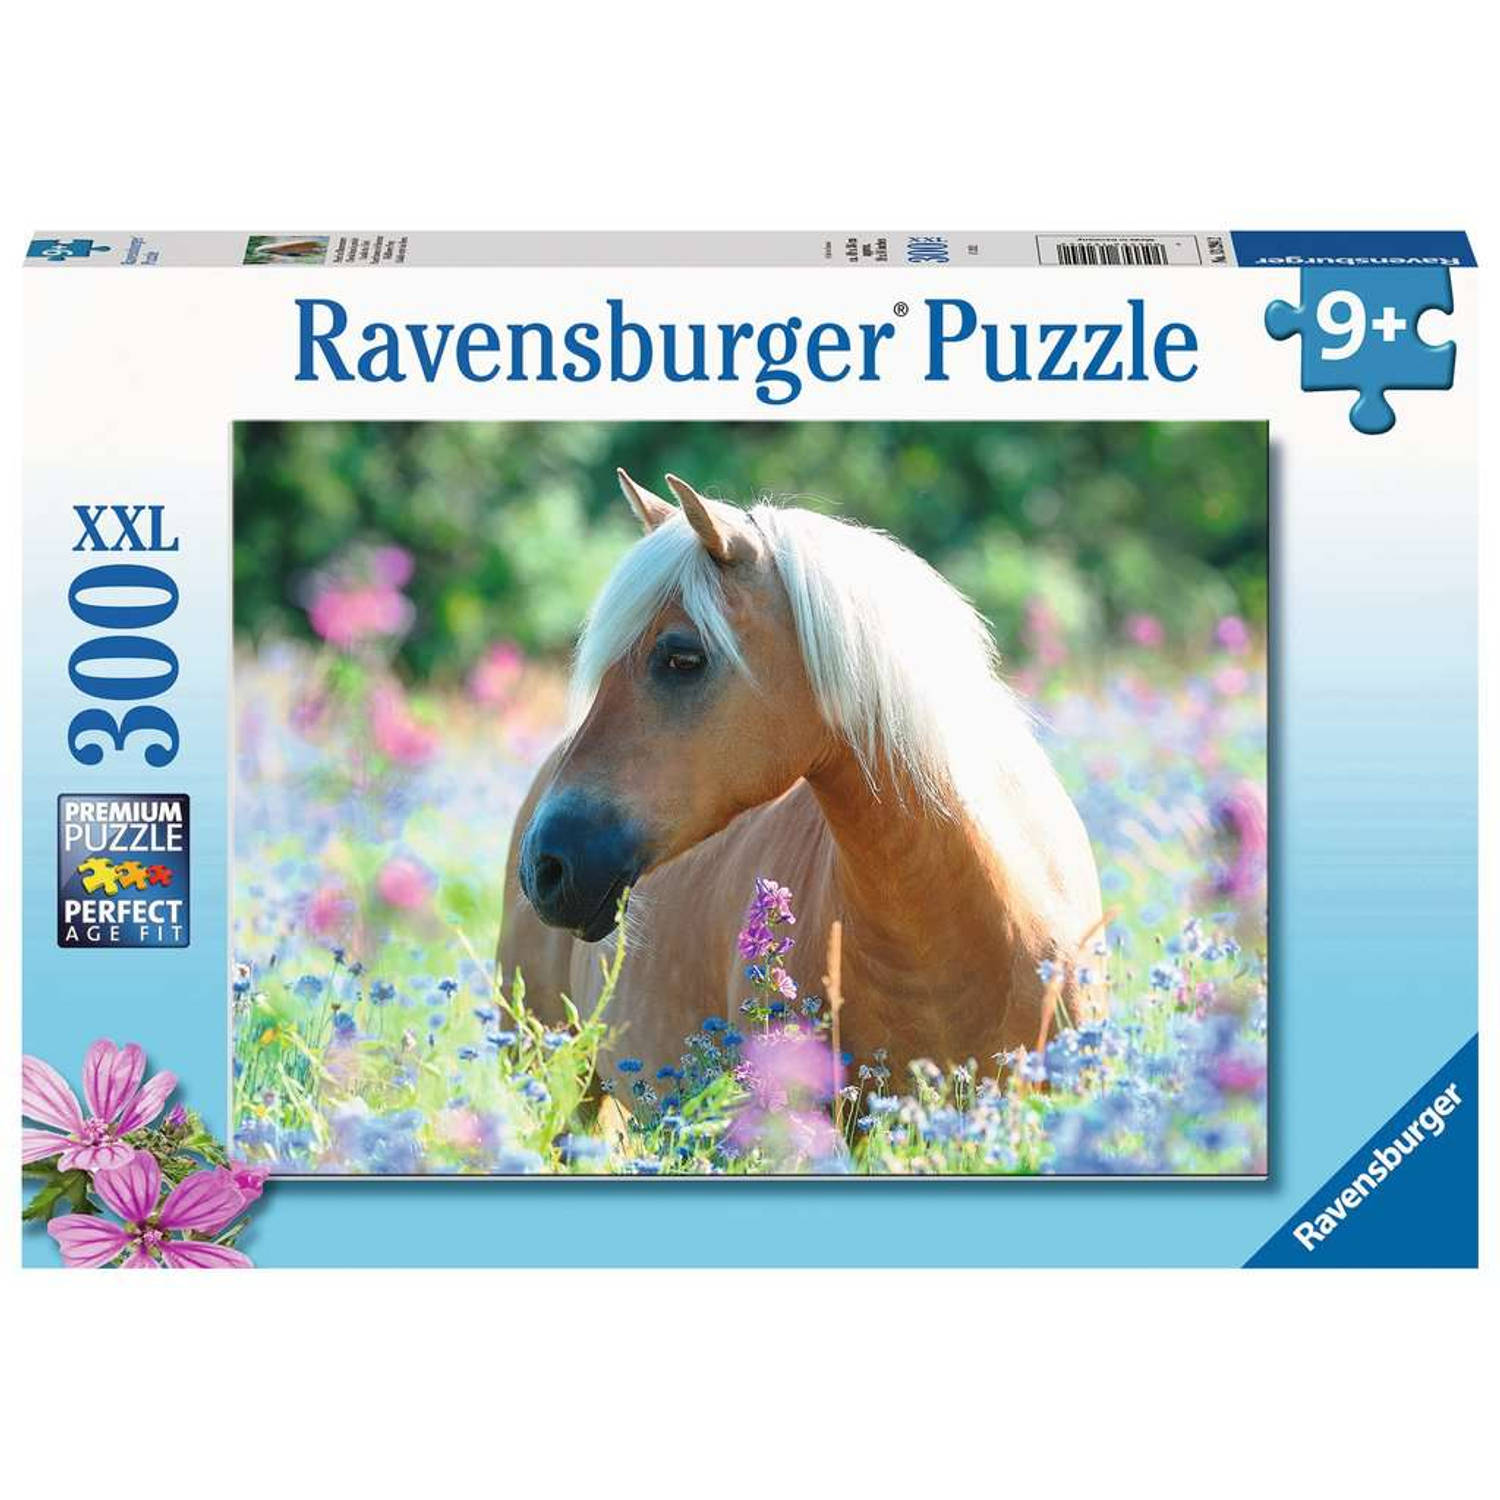 Ravensburger puzzel paard in bloemenzee 300 stukjes